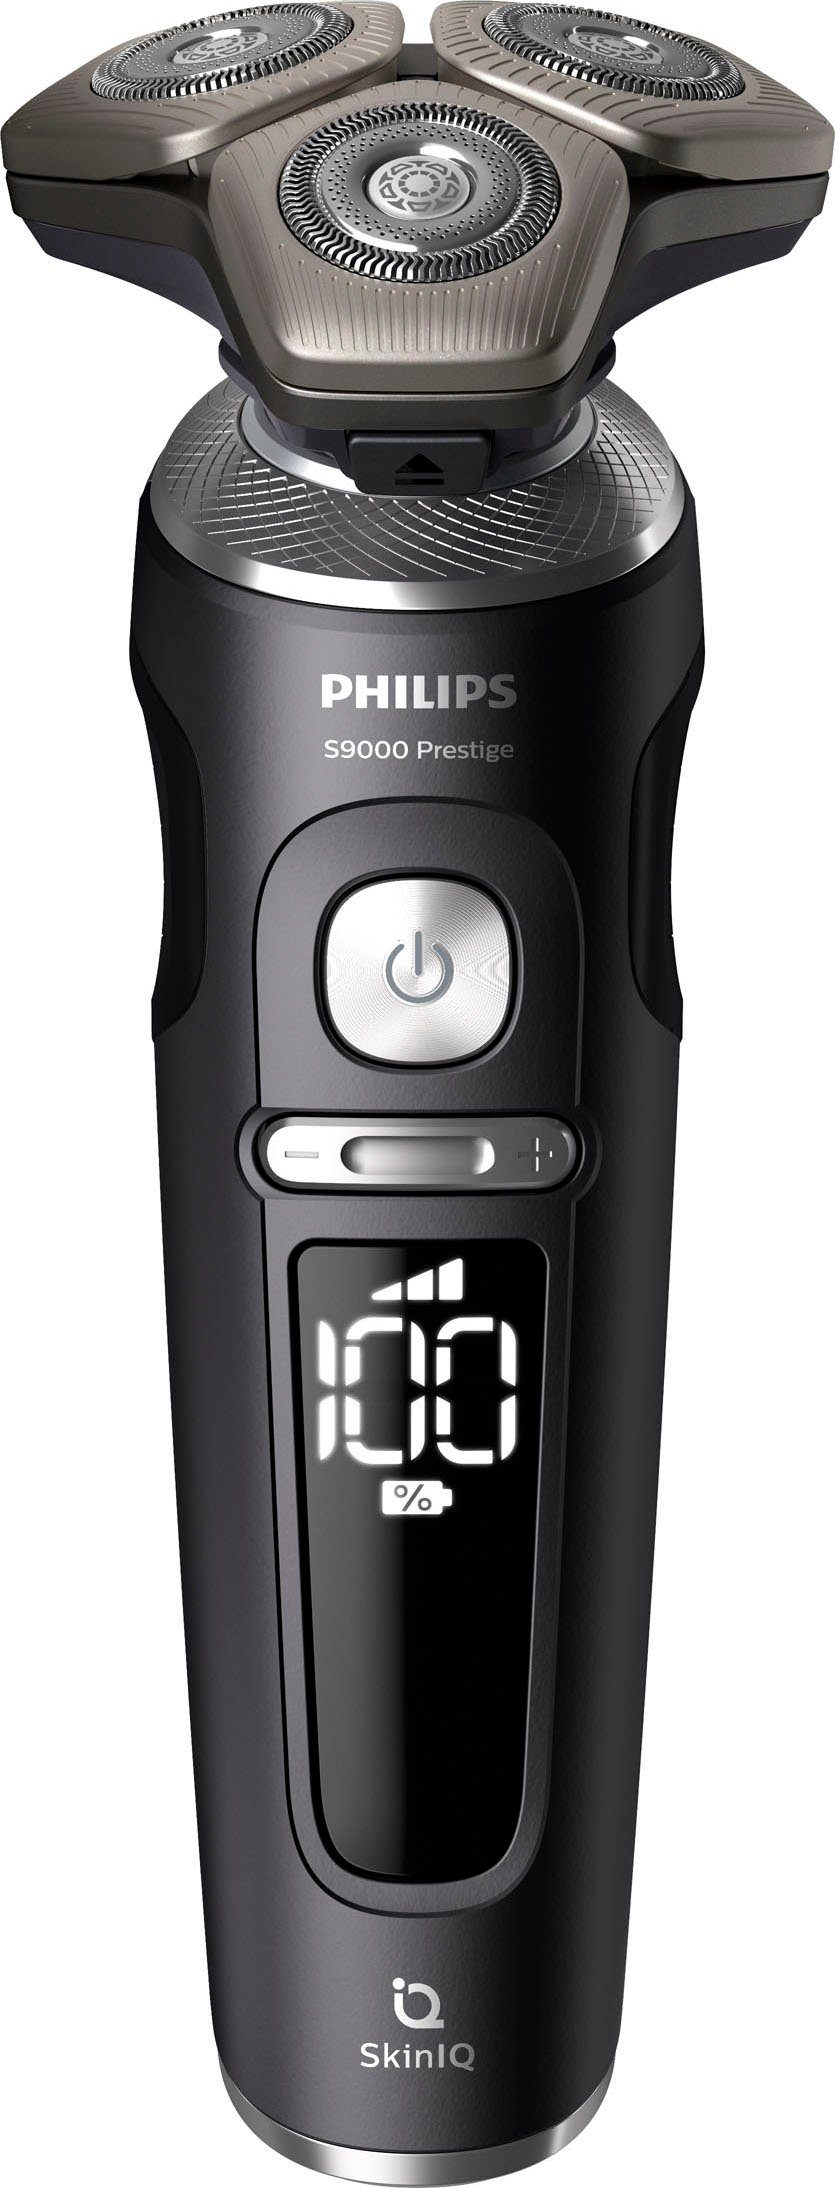 Philips Elektrorasierer Series 9000 Prestige SP9840/32, Reinigungsstation,  Aufsätze: 1, Etui, mit SkinIQ Technologie